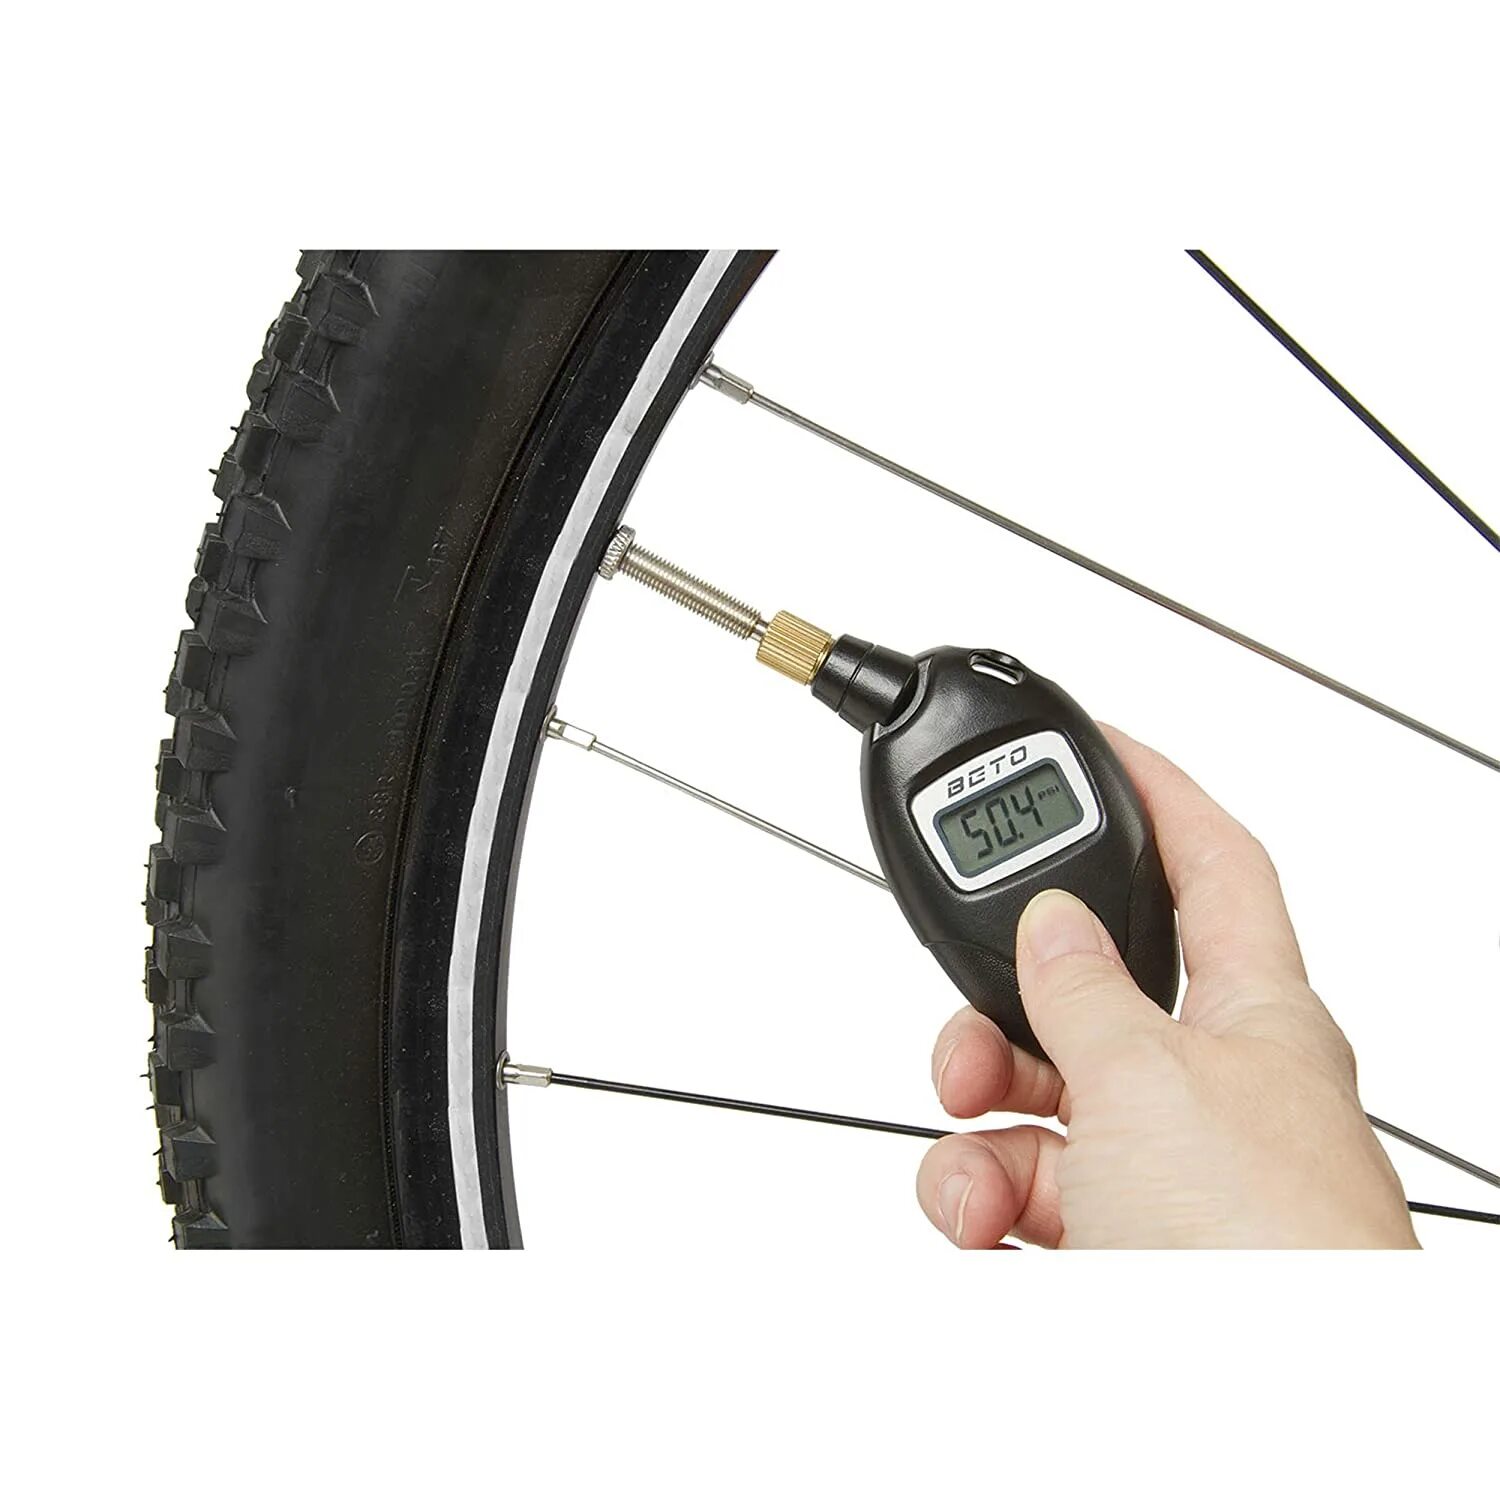 Цифровой манометр Digital Pressure Gauge. Манометр 160bar. Велосипедный насос Beto 2 way. Цифровой манометр для велосипеда.